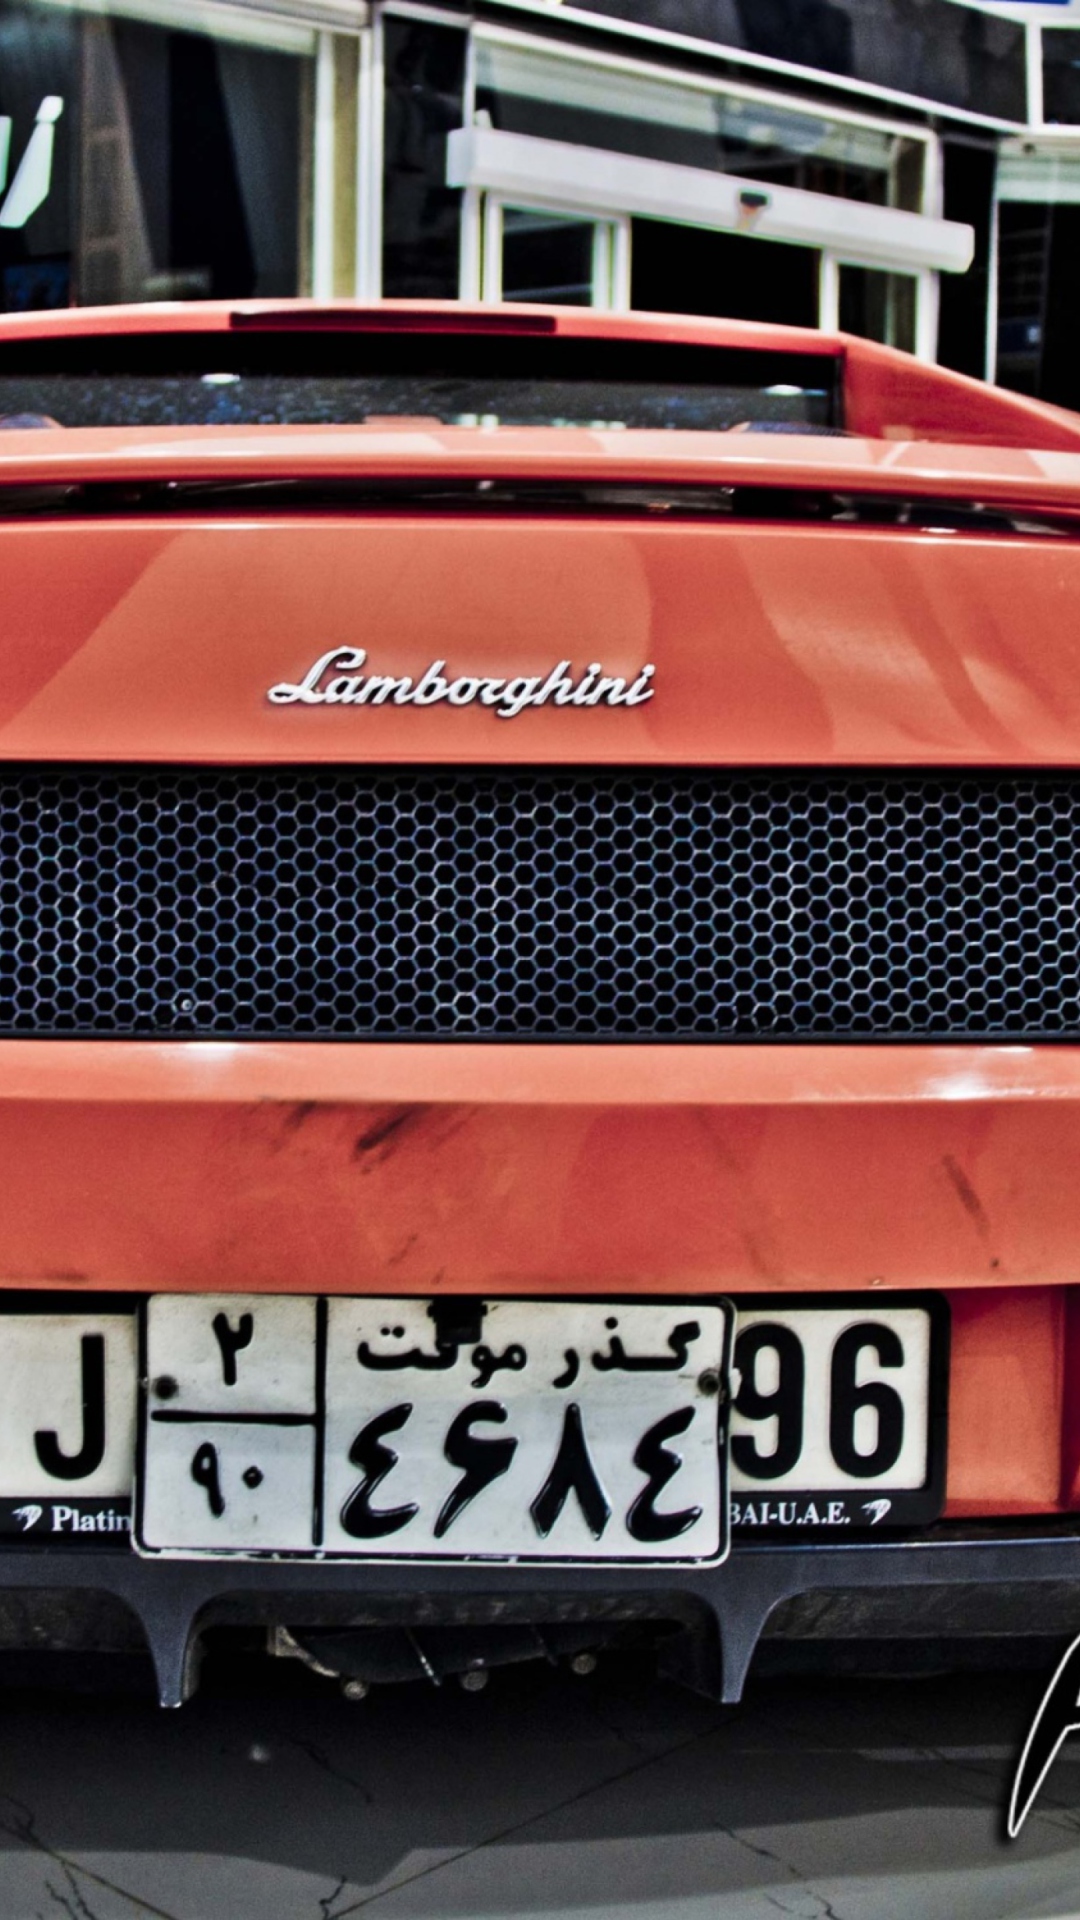 Fondo de pantalla Lamborghini 1080x1920